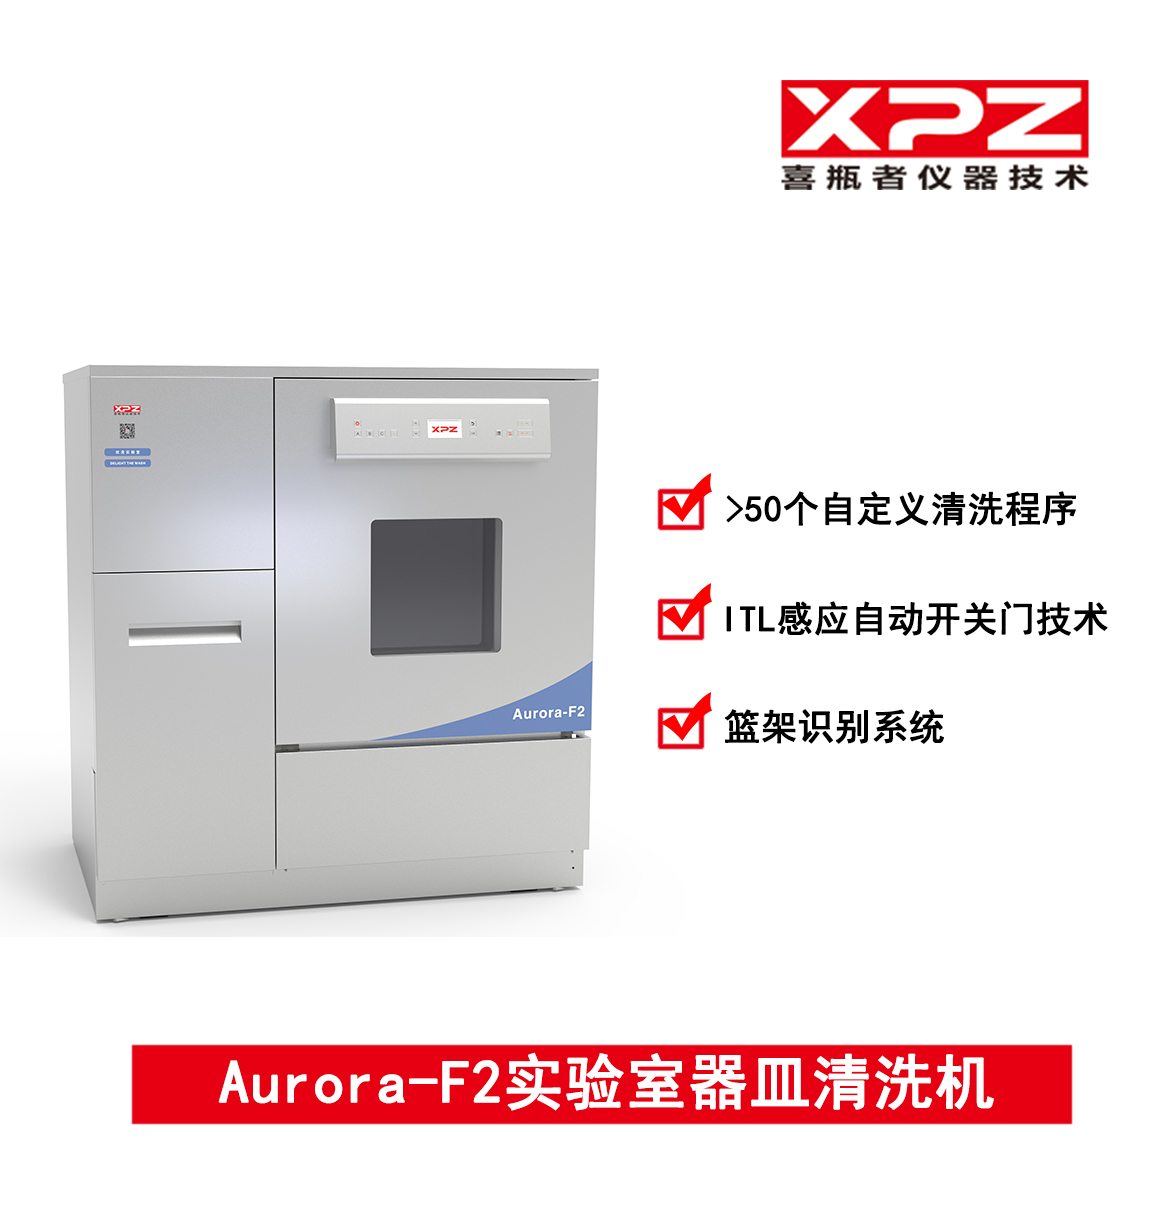 Aurora-F2实验室器皿清洗机